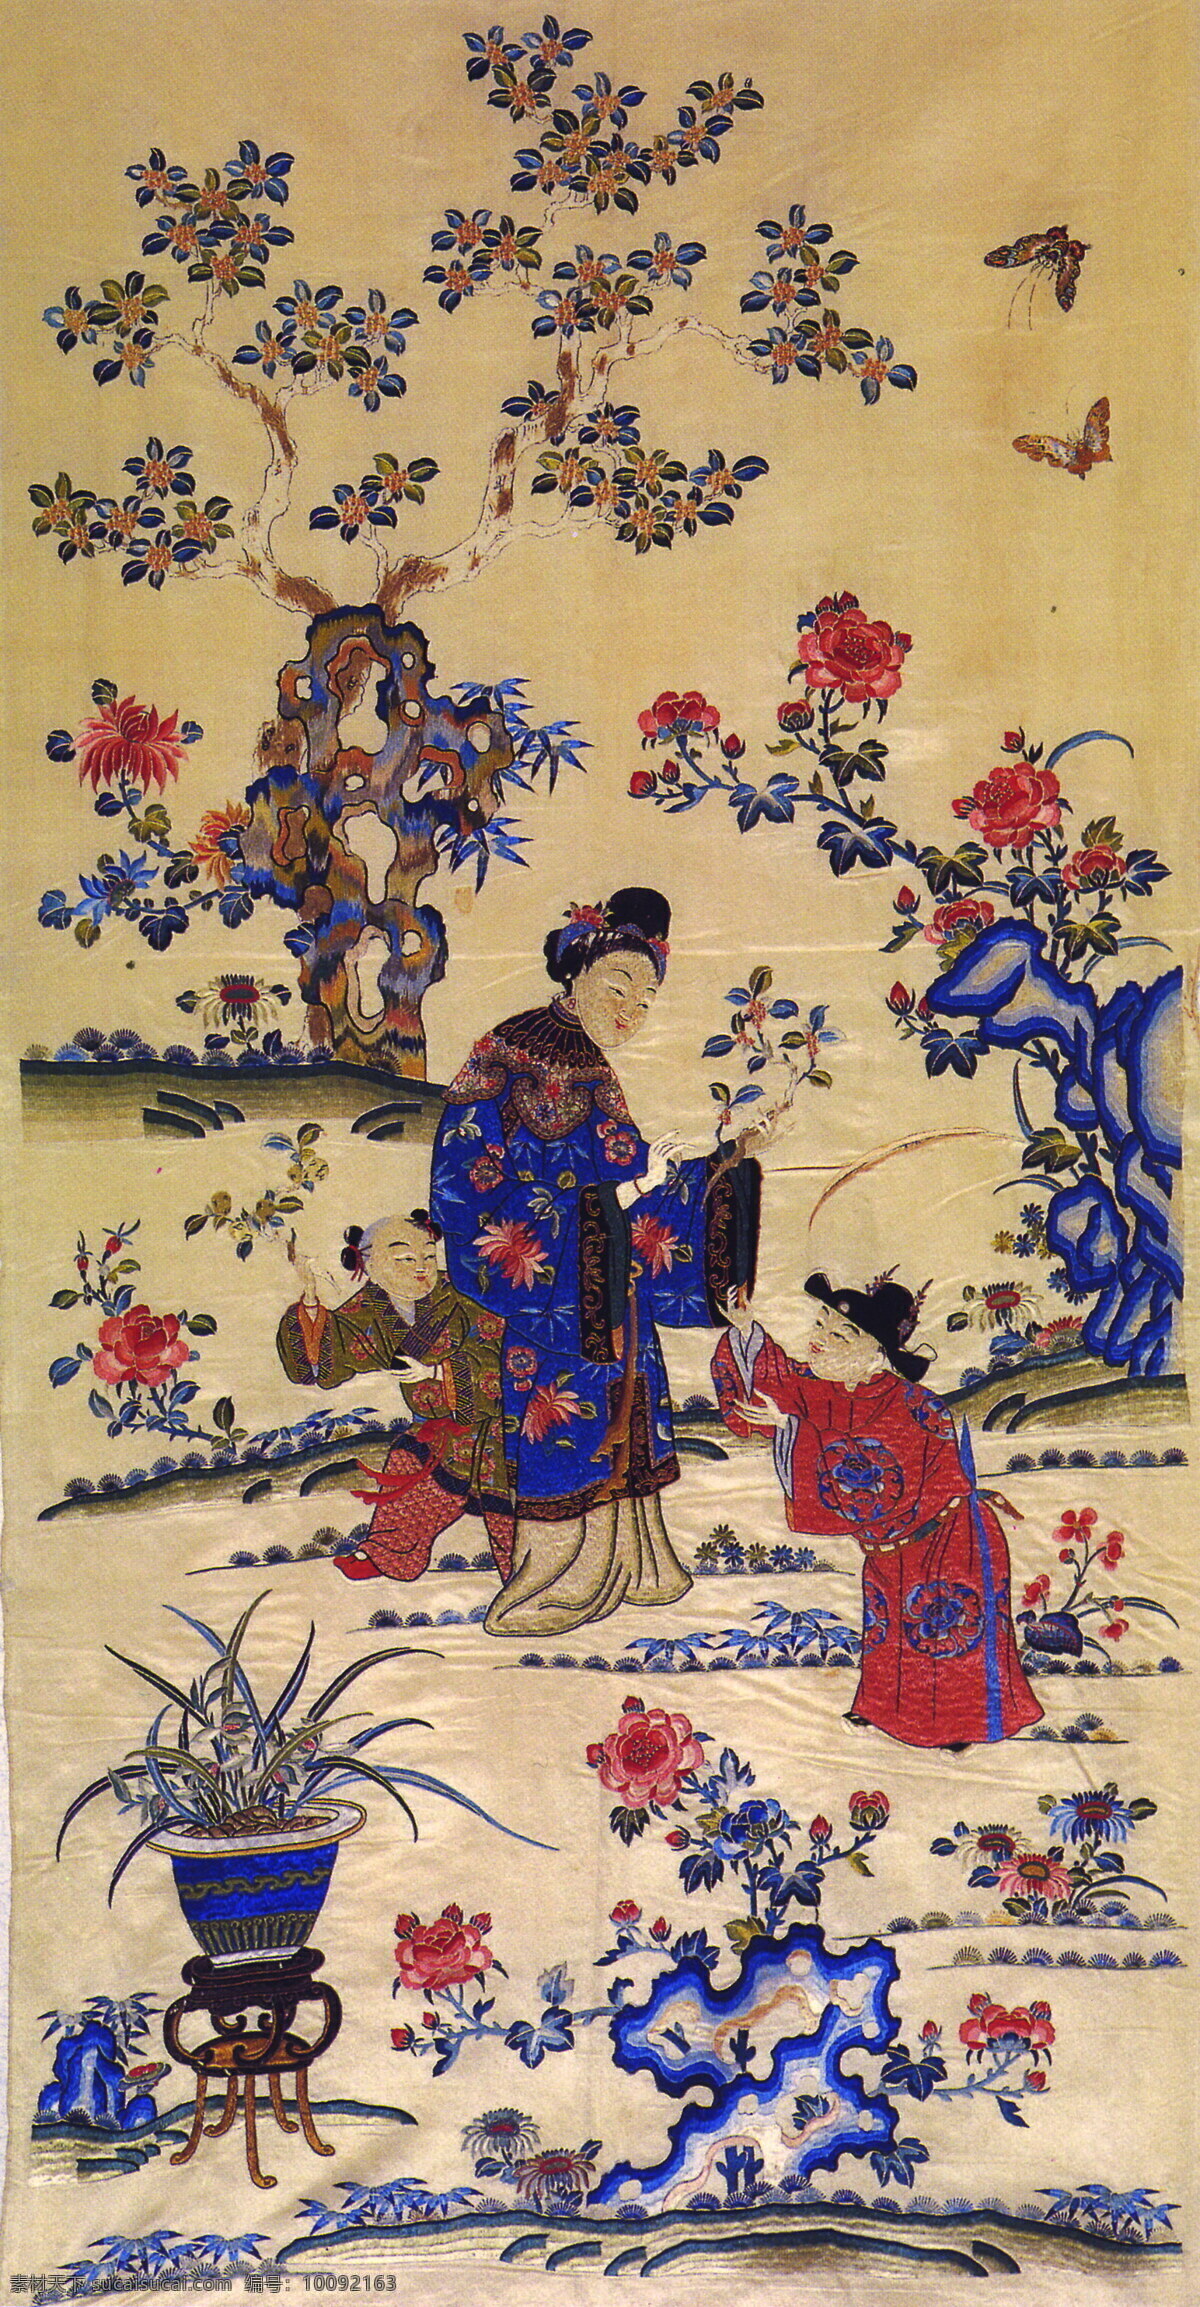 中国画 古典 古画 花卉 绘画 人物 山水 侍女 艺术 楼阁 文化艺术